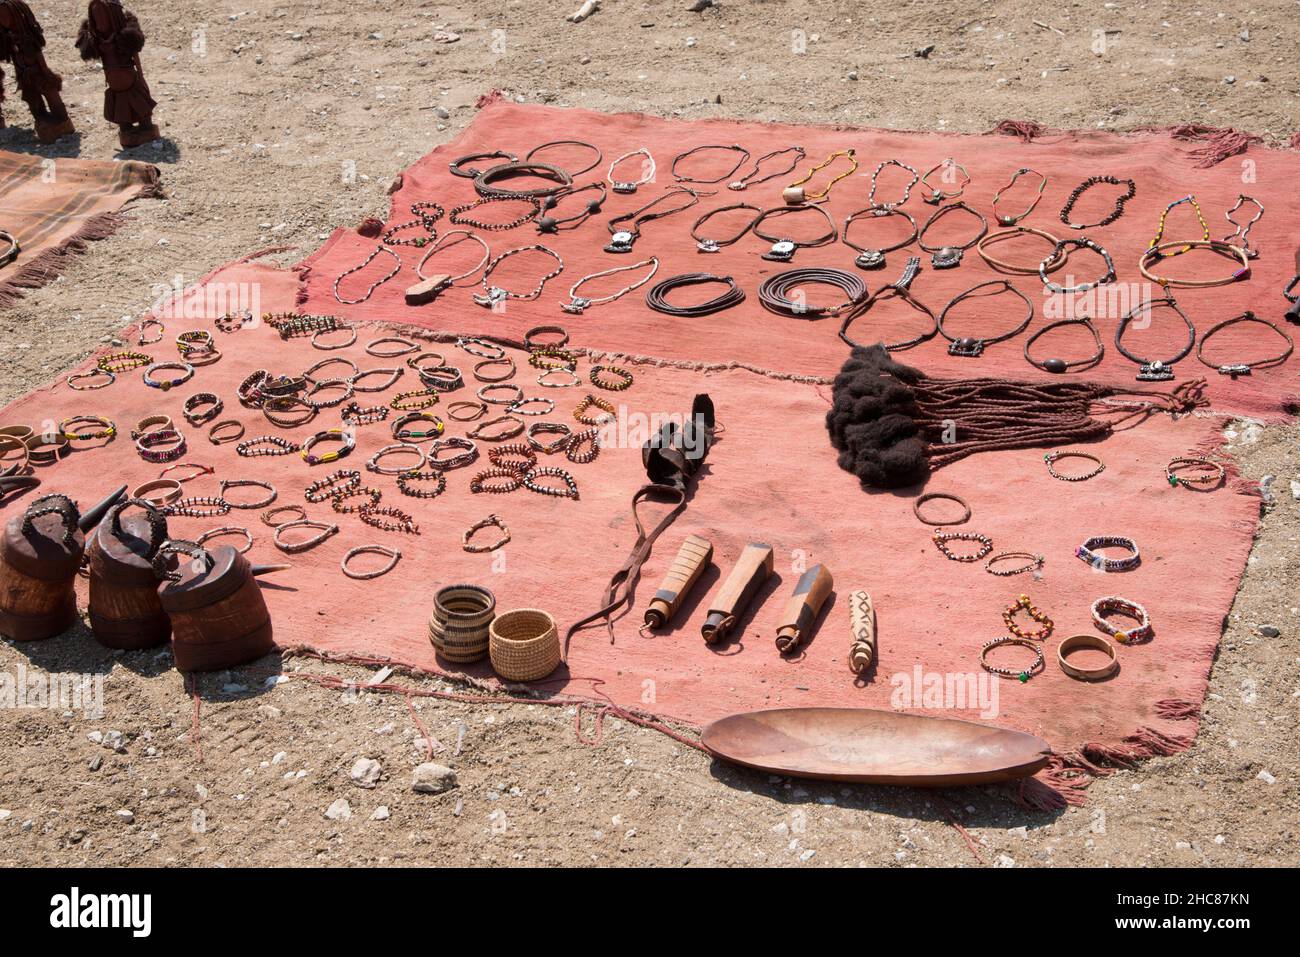 Gros plan de bracelets et d'objets de la tribu Himba dans la région de Kunene, en Namibie Banque D'Images